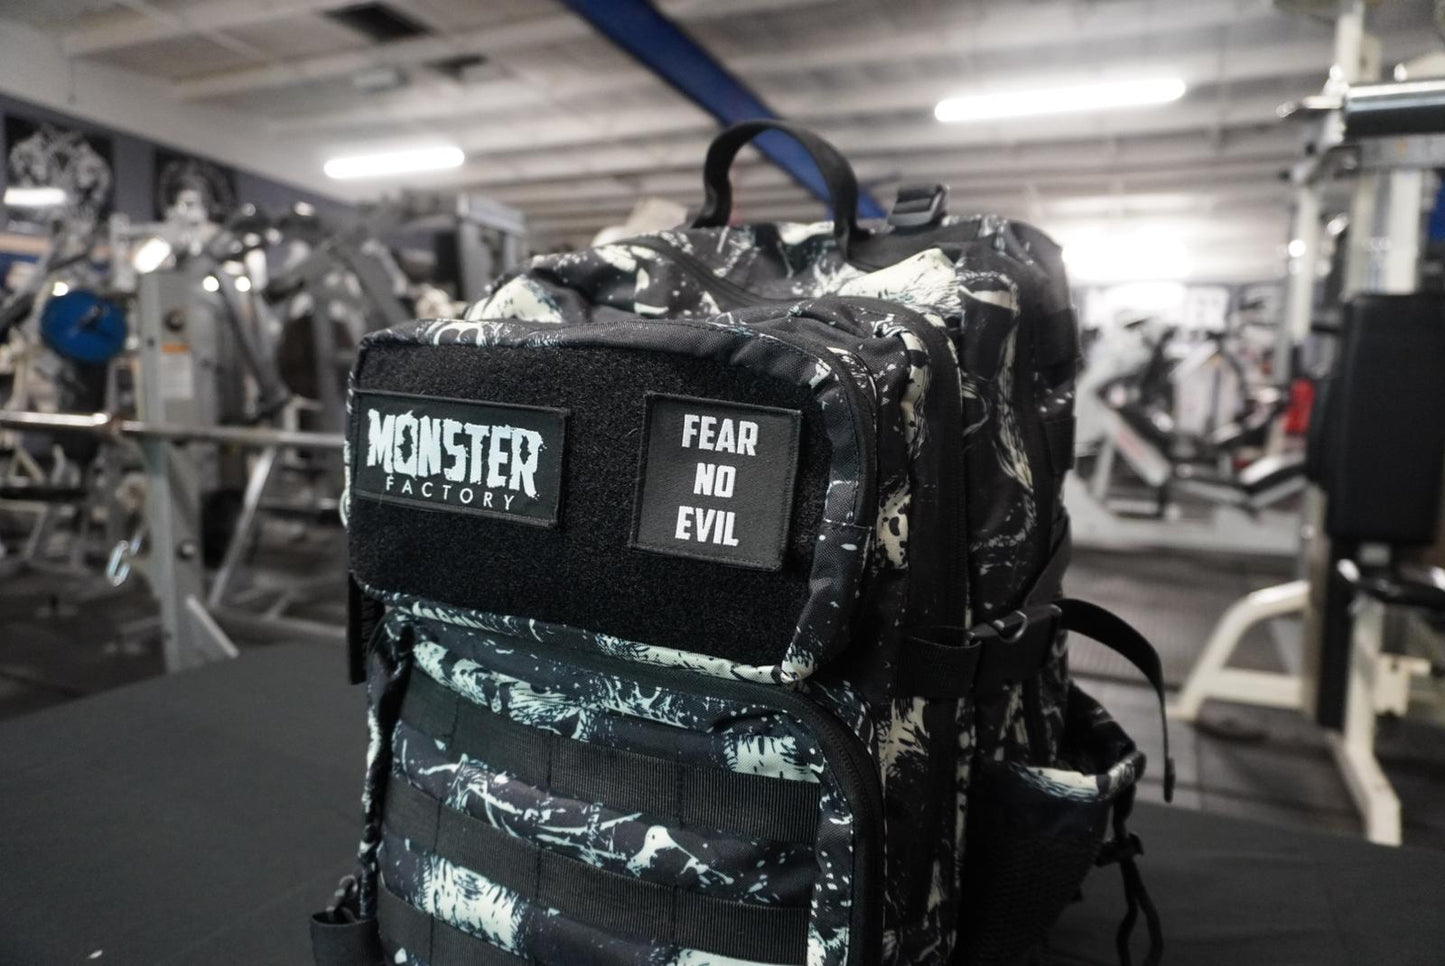 Monster factory Backpack